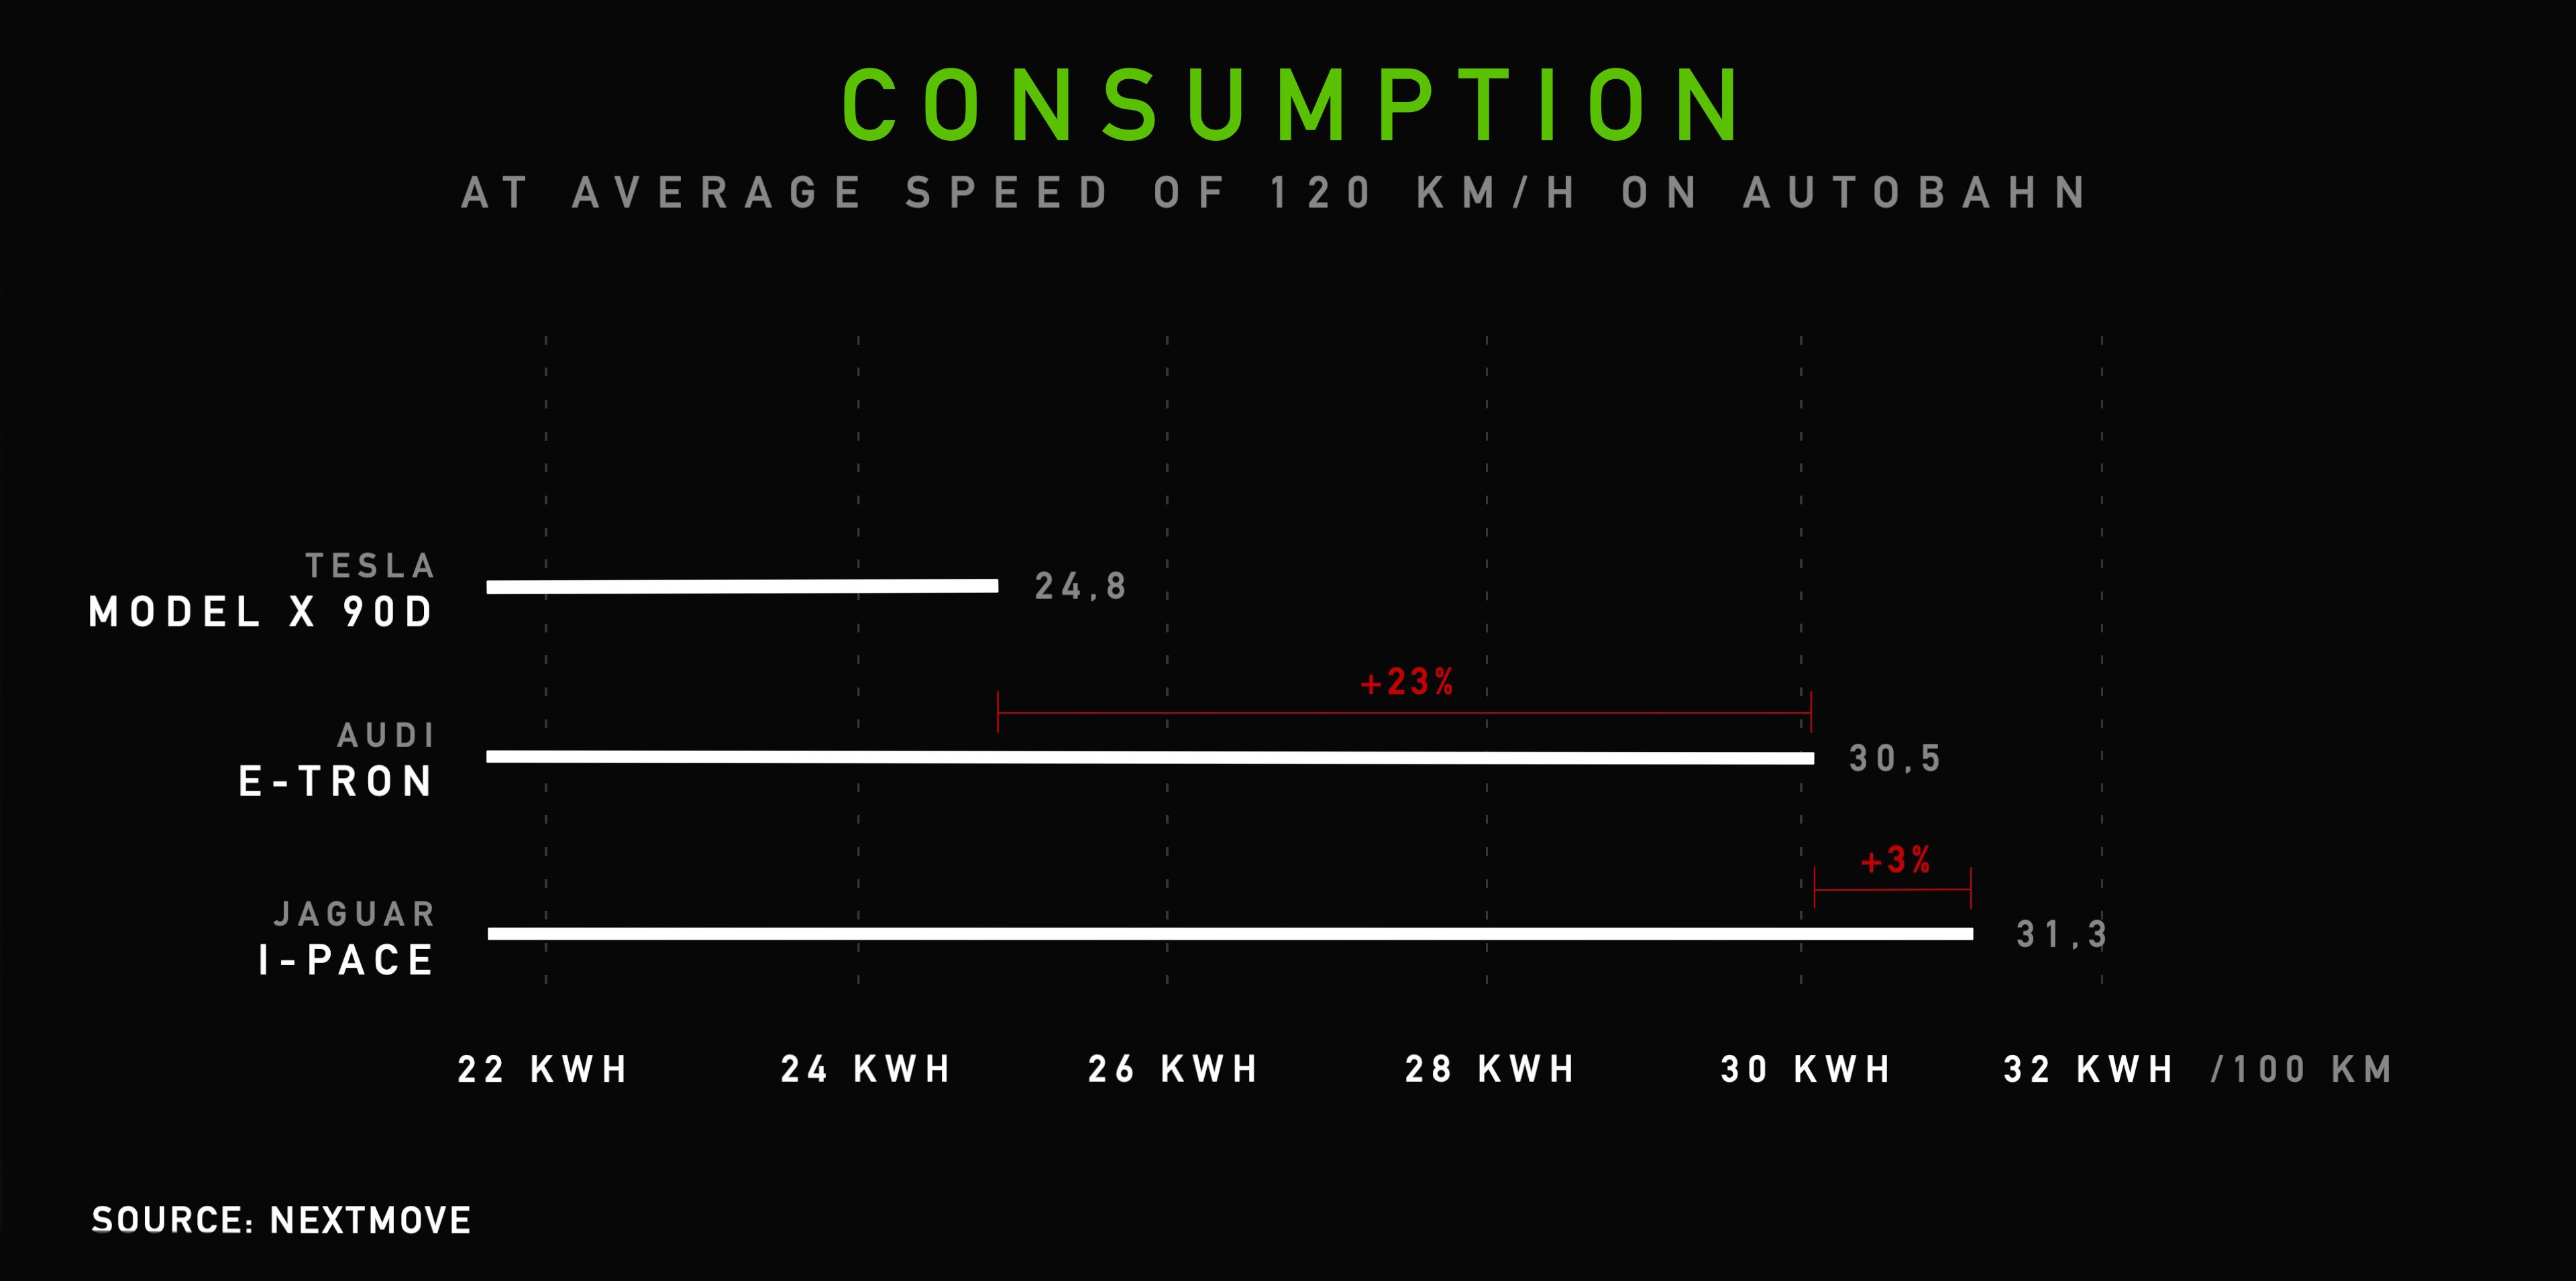 2_Consumption_EN-Audi-etron-Tesla-Model-X-Jaguar-I-PACE-Range-Consumption-Test-nextmove-1-e1550776961985.jpg